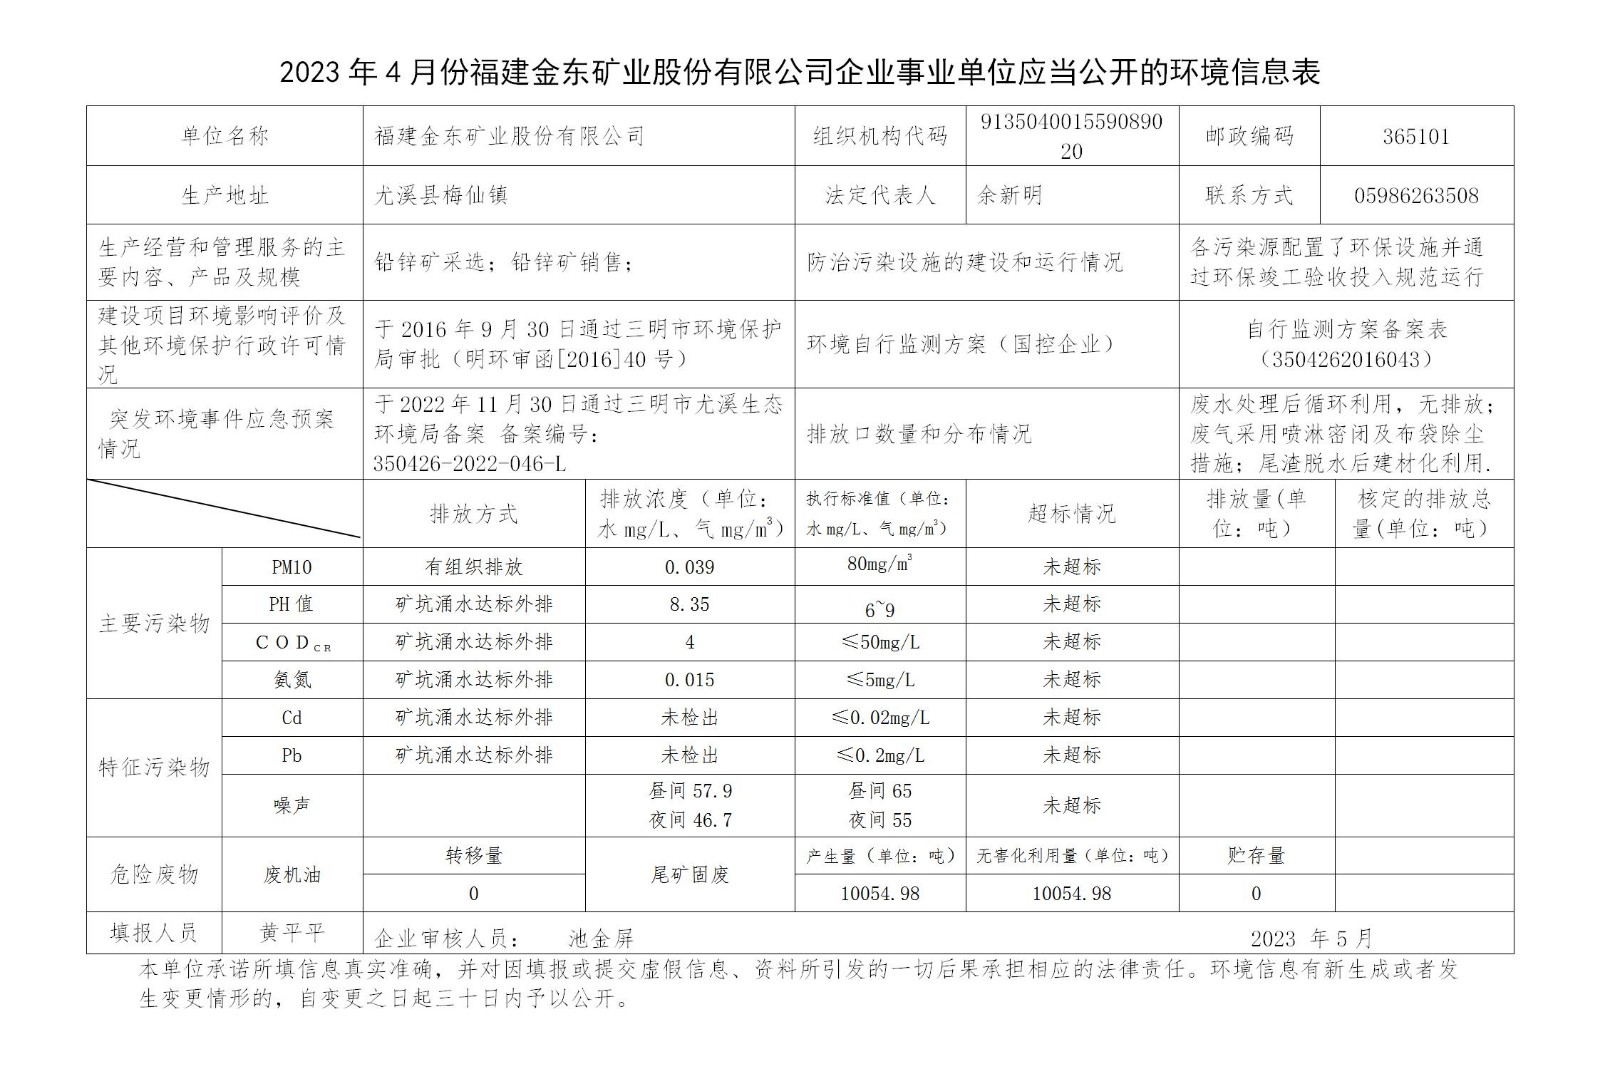 2023年4月份火狐电竞(中国)官方网站企业事业单位应当公开的环境信息表_01.jpg